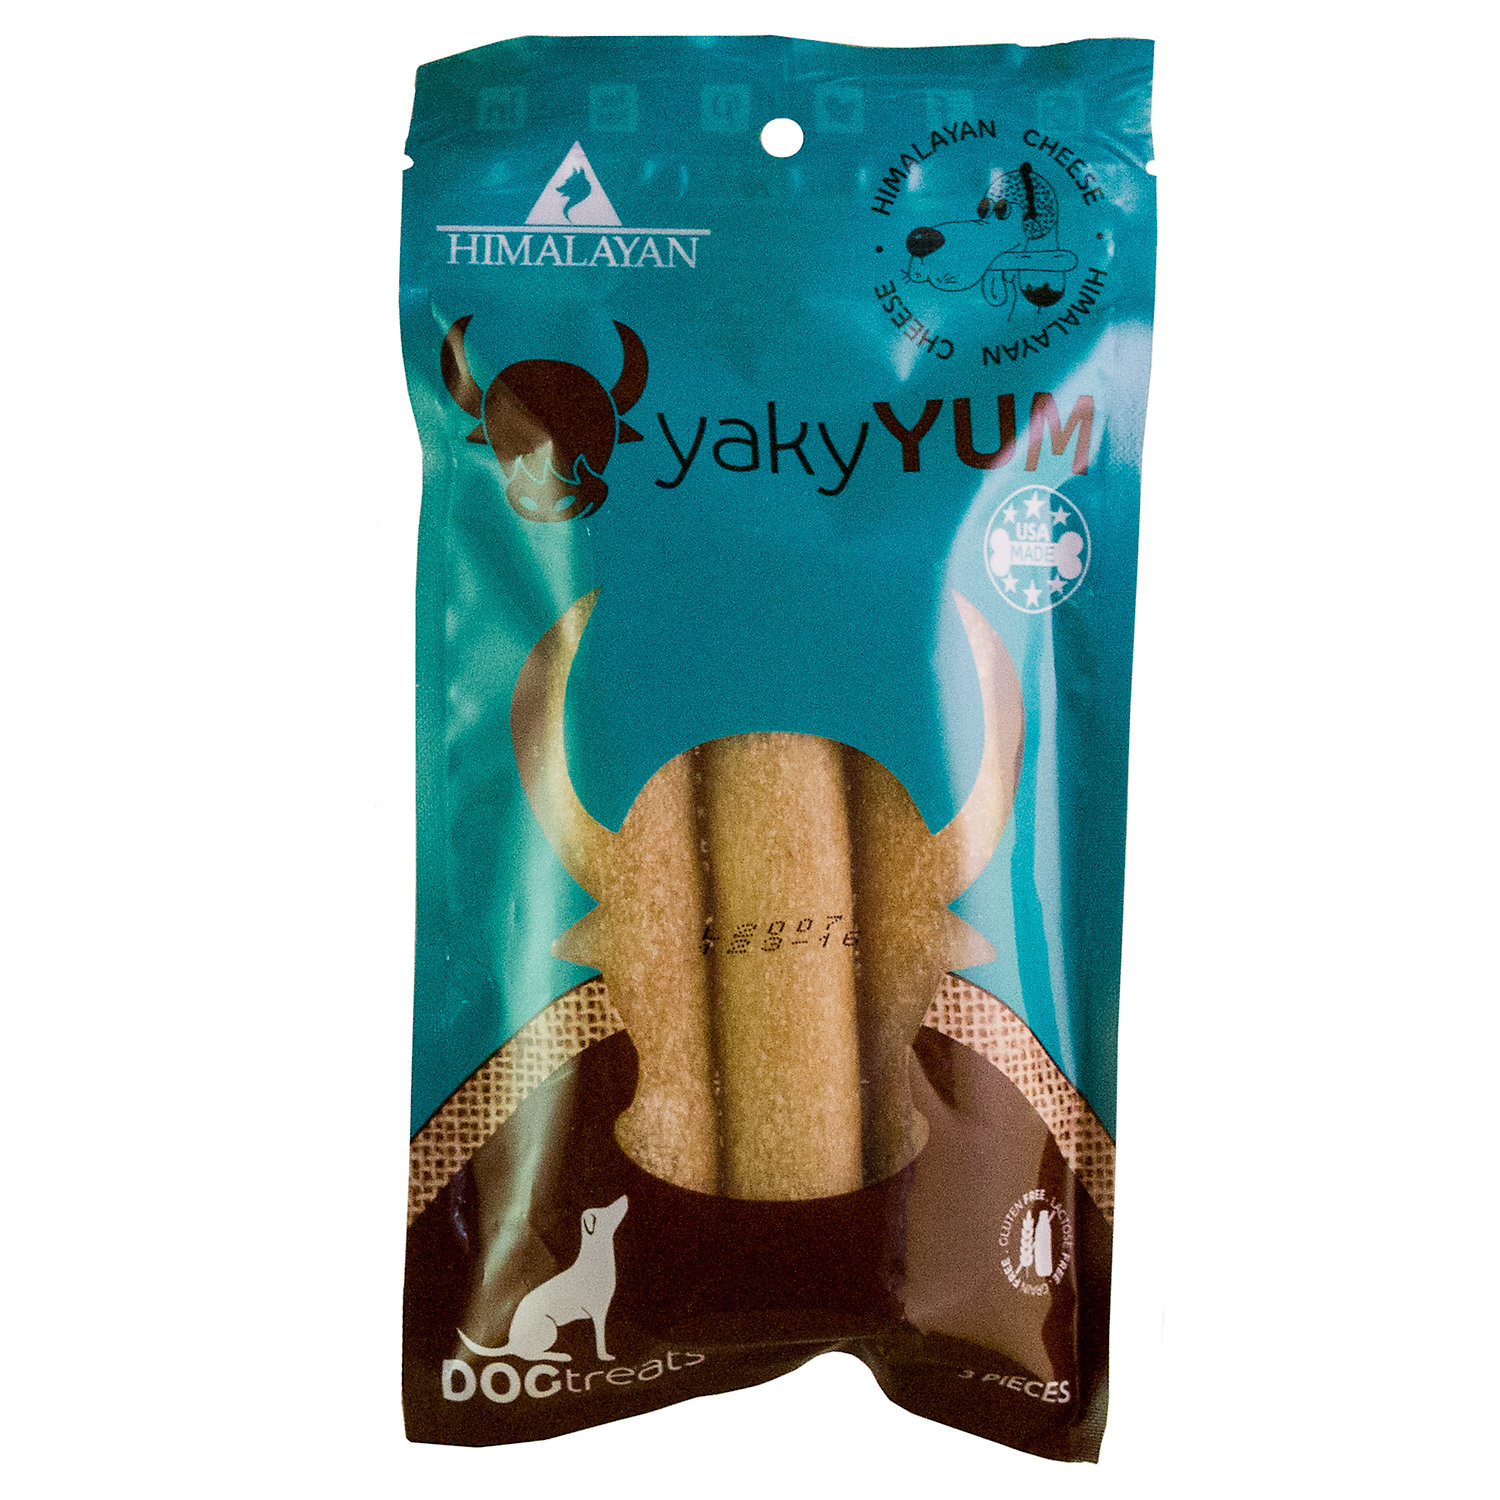 UPC 853012004784 product image for Himalayan yakySNACKS Cheese yakyYUM Dog Treats, 6.5 oz. | upcitemdb.com